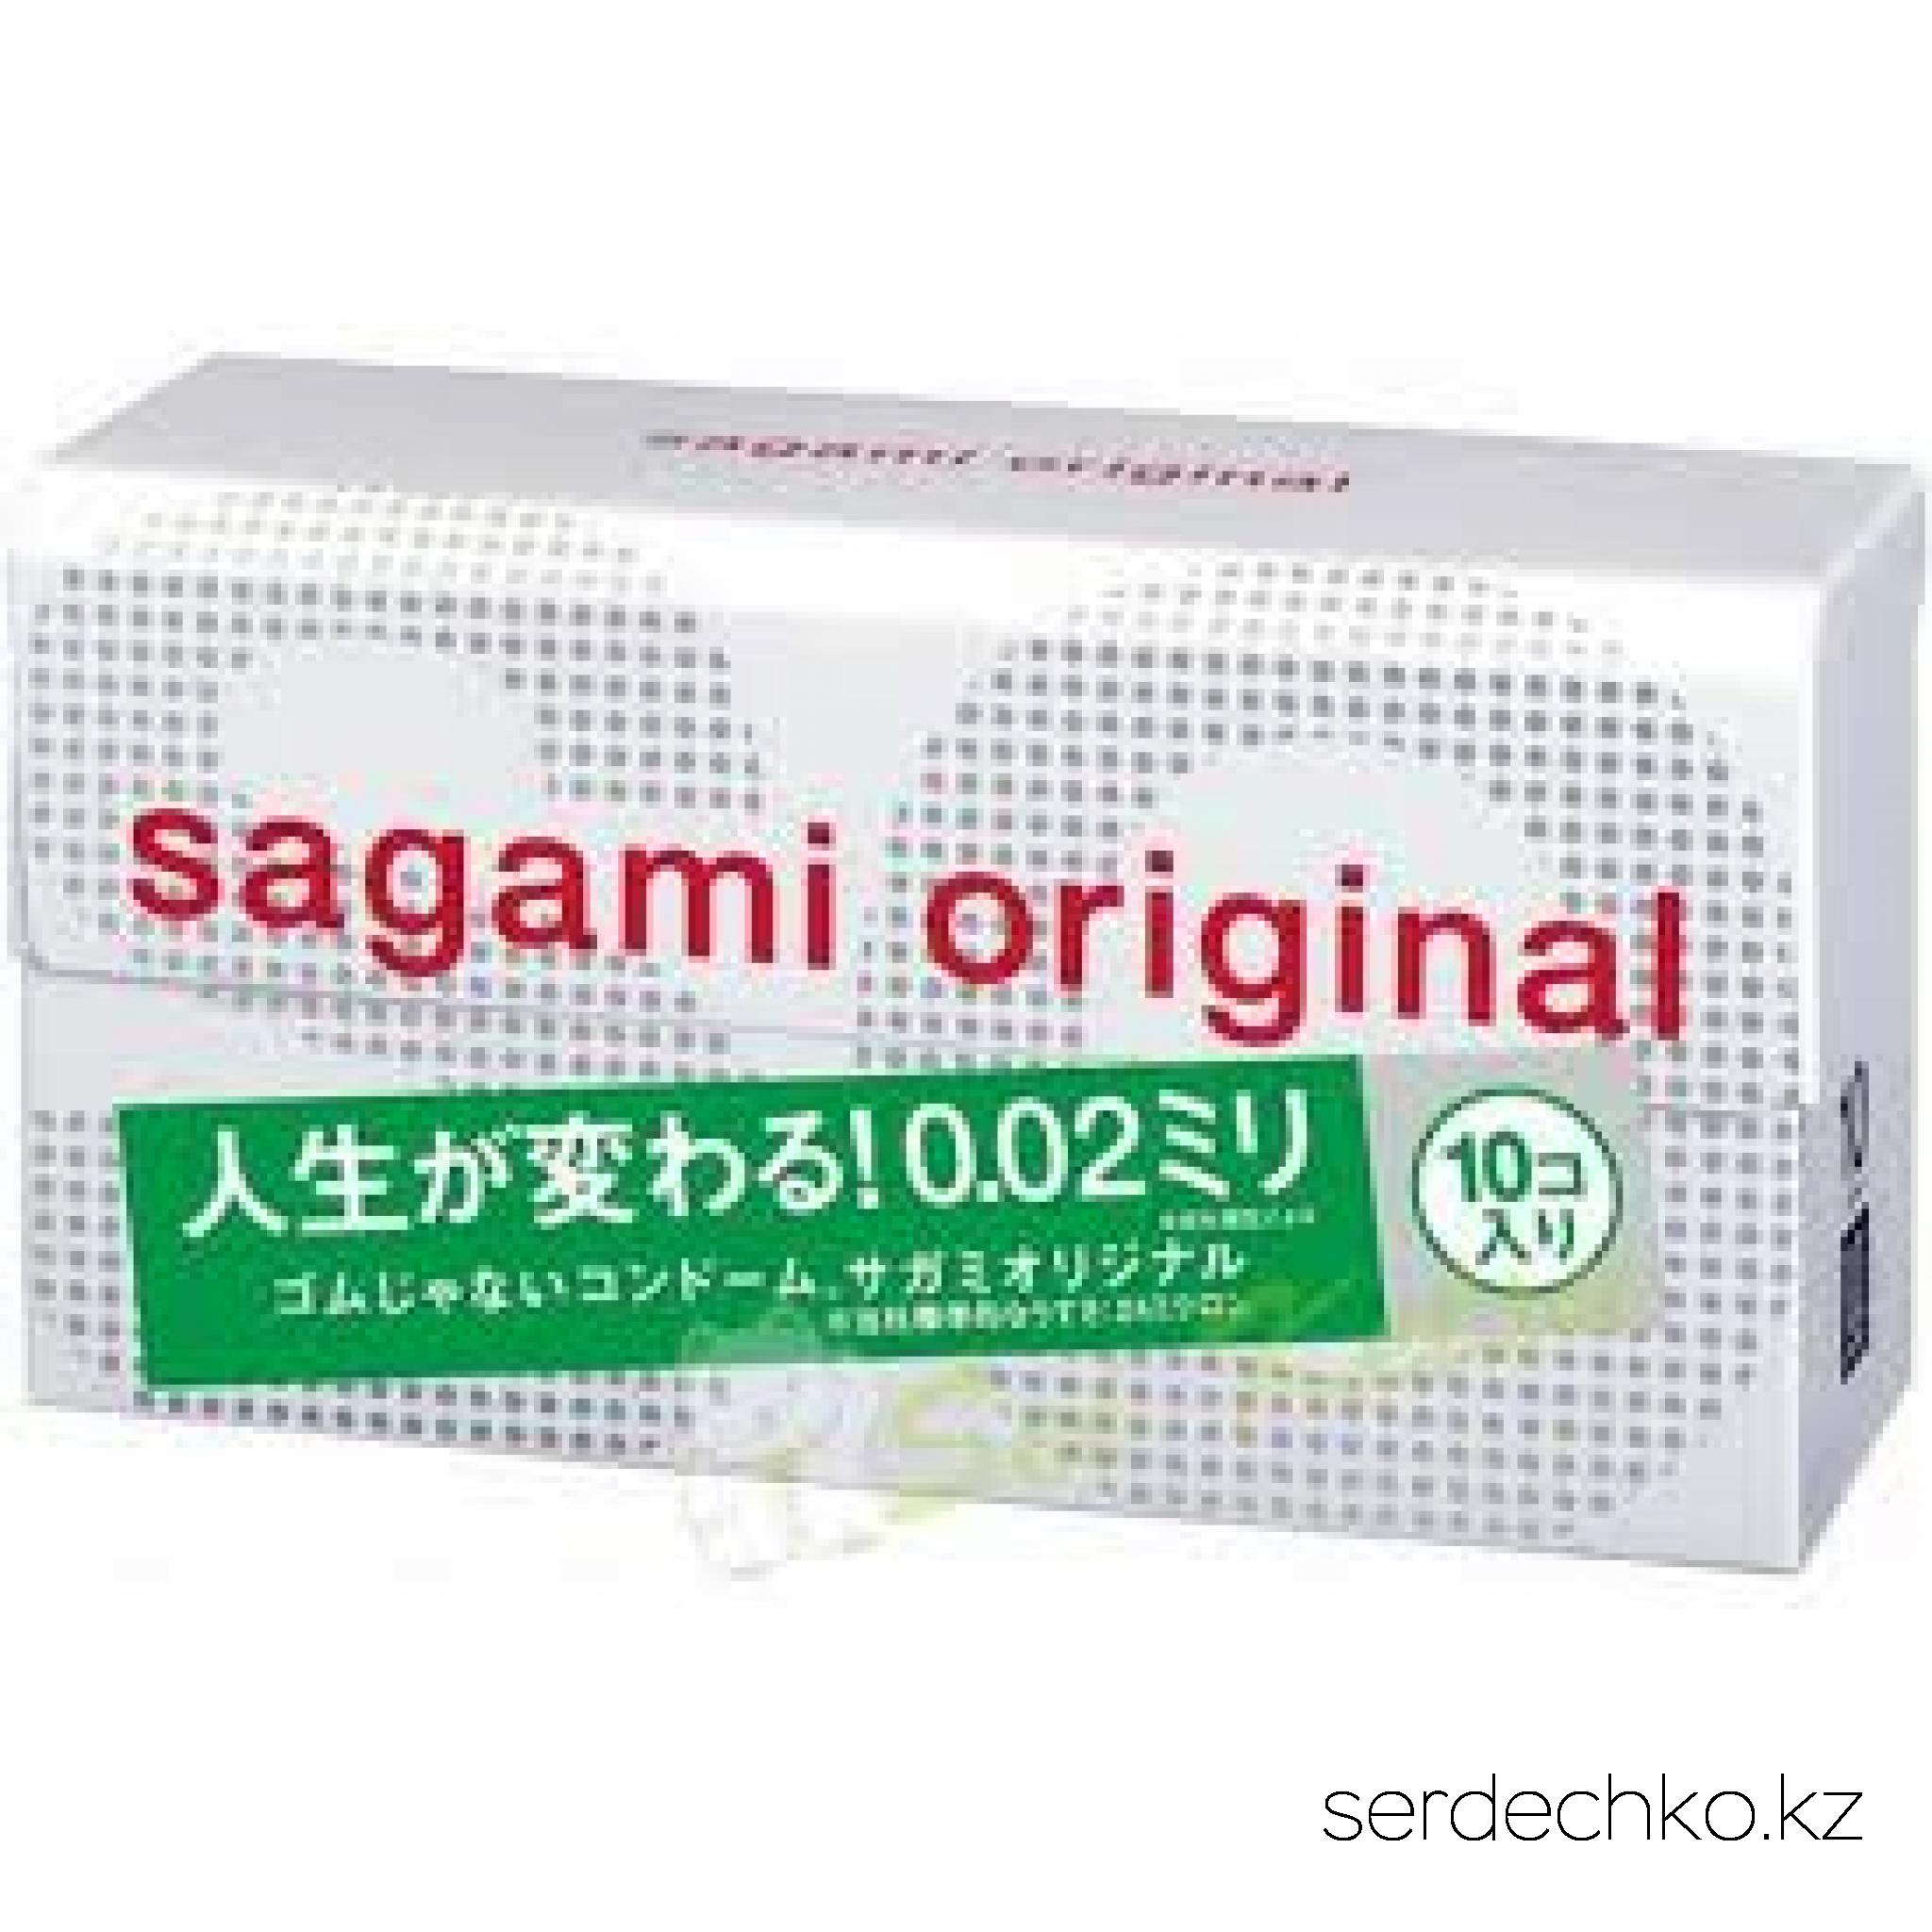 Японские полиуретановые презервативы 0.02 мм Sagami Original, 
	Sagami original 0.02 - самые тонкие и надежные презервативы в мире.

	Толщина стенки 0.02mm - в три раза тоньше, чем у стандартных латексных презервативов.
	Прочность полиуретановых презервативов в 2 раза выше в тестах на растяжение и в 3 раза выше в тестах на объемное расширение.
	Их теплопроводность в 7 раз выше, чем у латекса. Тепло передается так, как если бы презерватива не было.

	Описание: Полиуретановые презервативы не содержат протеинов и, как следствие, нет специфического “латексного” или "резинового" запаха. Высокая плотность укладки молекул полиуретана делает поверхность исключительно гладкой и способствует натуральности ощущений. Высокая прозрачность способствует полноте визуальных ощущений Отсутствие протеинов и химических катализаторов исключает соответствующие аллергические реакции. (по статистике, аллергию на латекс, в разных странах имеют от 3 до 10% населения) Высокая стабильность при температурных перепадах увеличивает надежность и срок годности. Нетоксичность и полная биосовместимость полиуретана способствуют безопасности в использовании. Благодаря биосовместимости и высокой надежности, именно этот материал широко используется в производстве катетеров для сосудов и искусственного сердца.

	Материал: Полиуретан
	Материал: полиуретан
	Номинальная ширина: 36 + / - 2 мм
	Номинальная длина: 170 + / - 10mm
	Смазка: силиконовое масло
	Толщина стенки - 0.02 мм (20 микрон)
